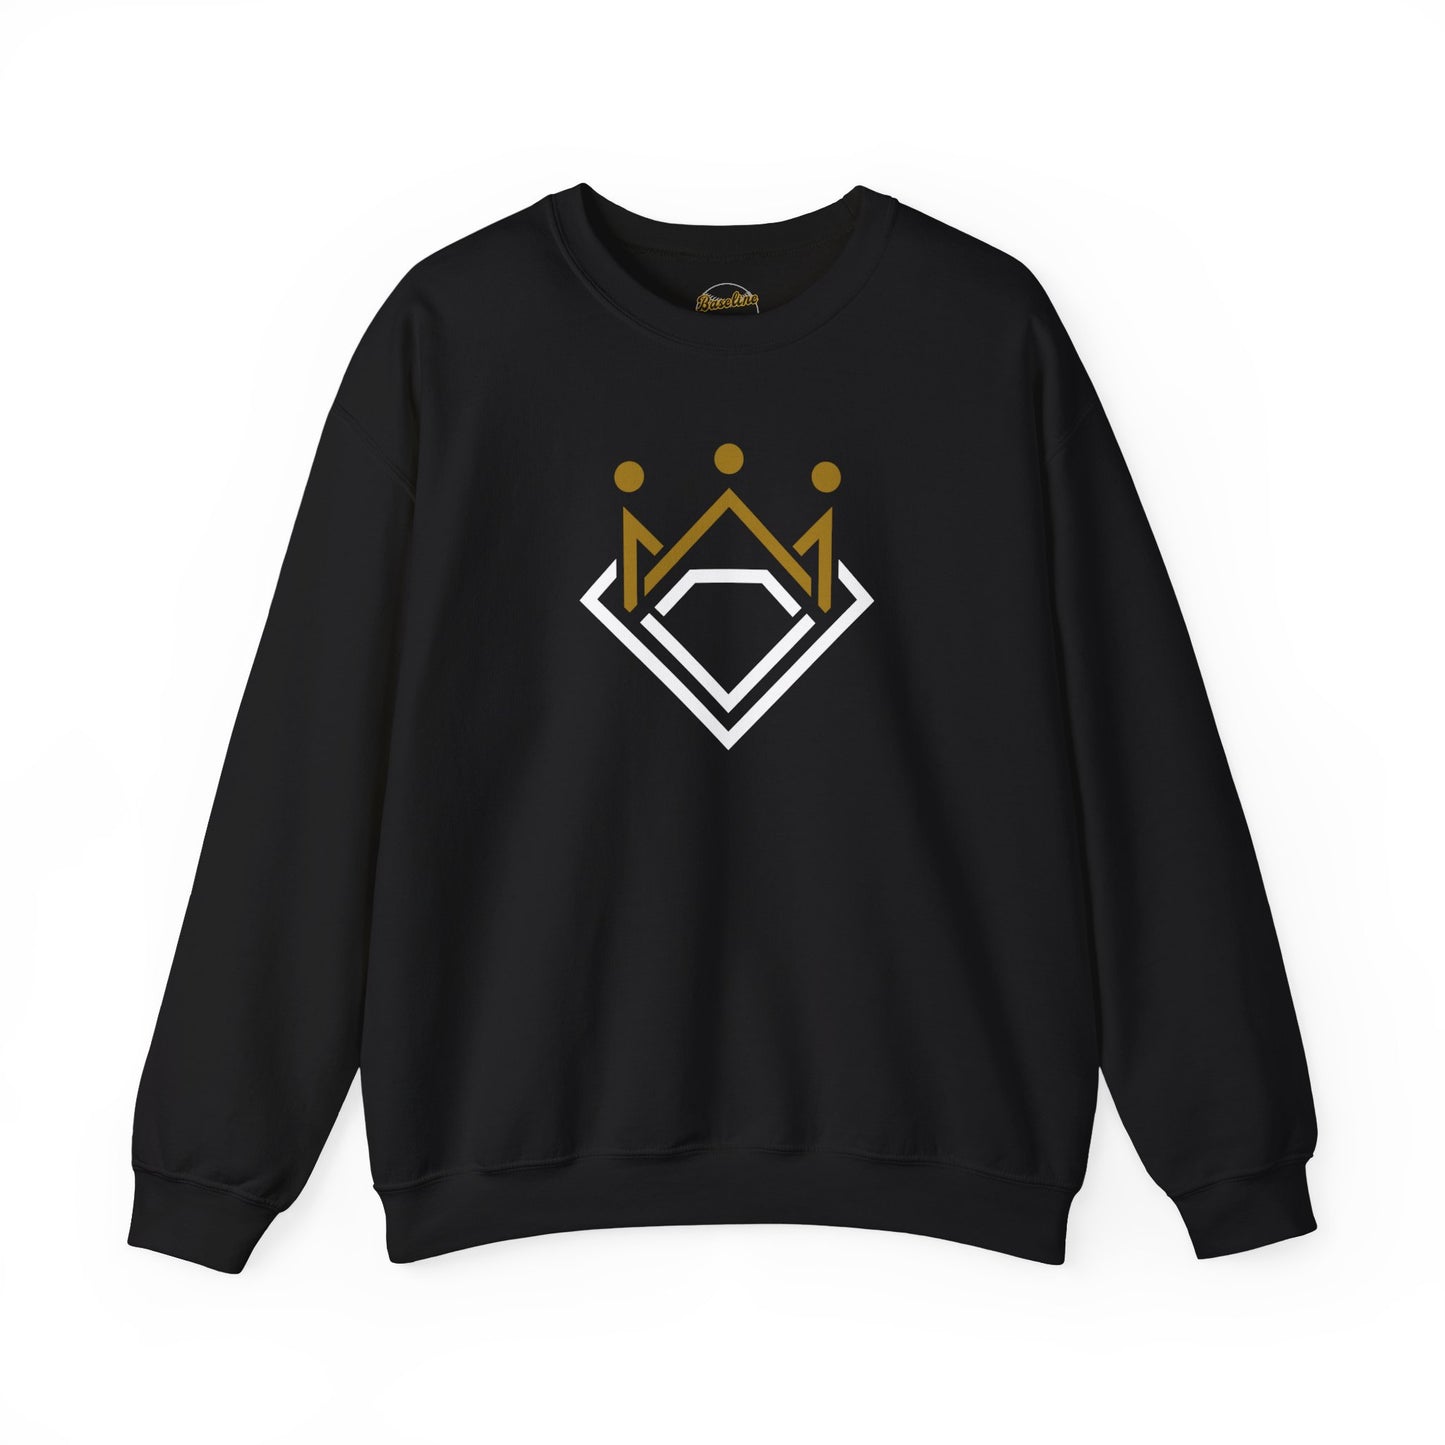 Baseline Clothing Co. King of Diamonds Crewneck Sweatshirt